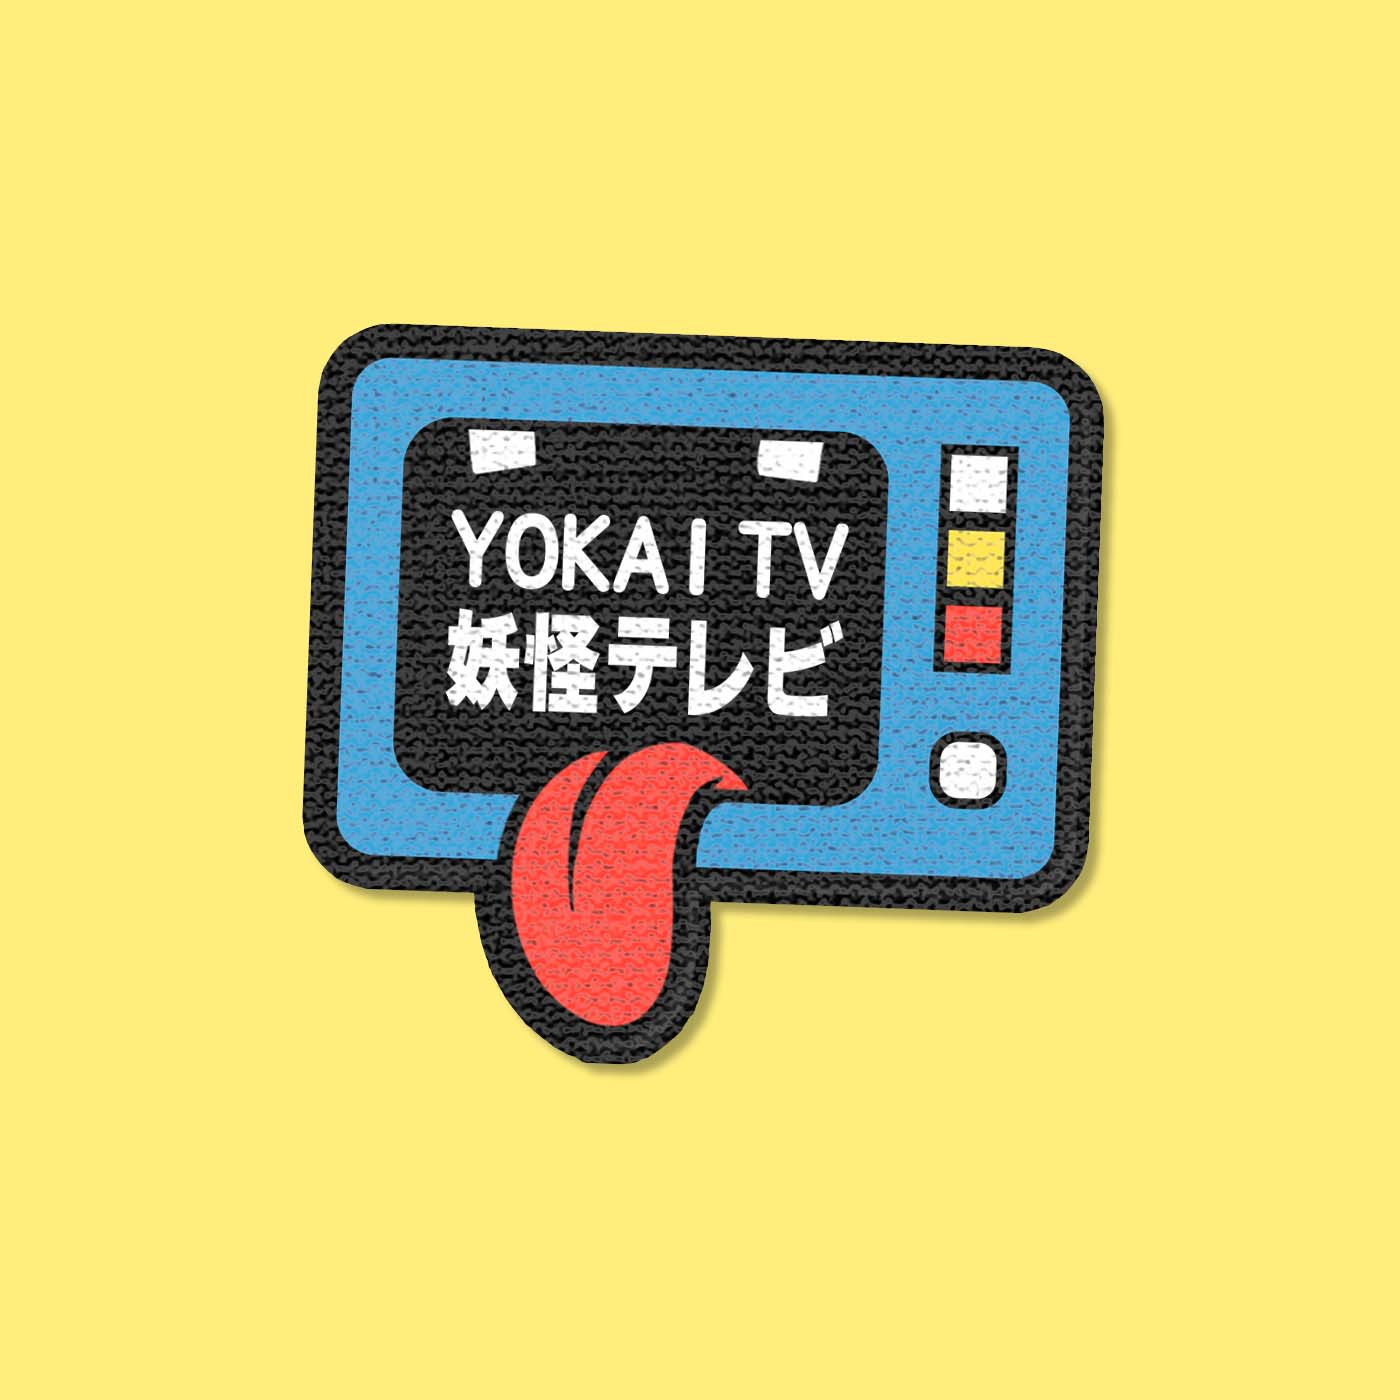 YOKAI TV Patch Clothing 🤖